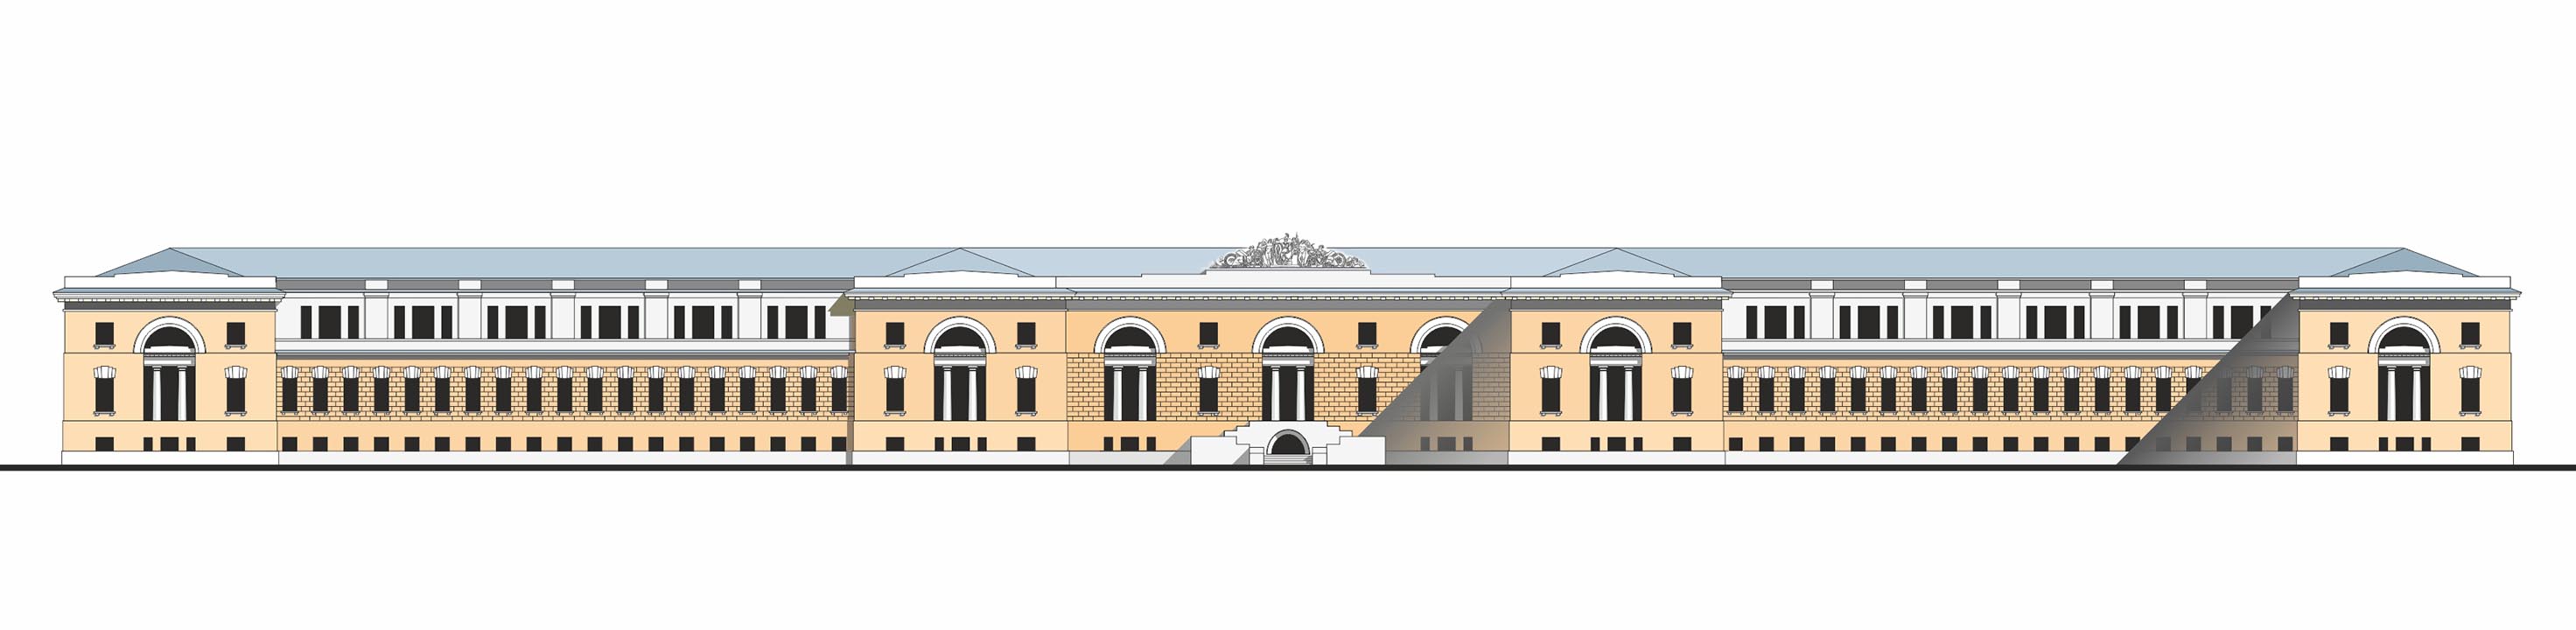 Слободской дворец. Эскиз реставрации с надстройками